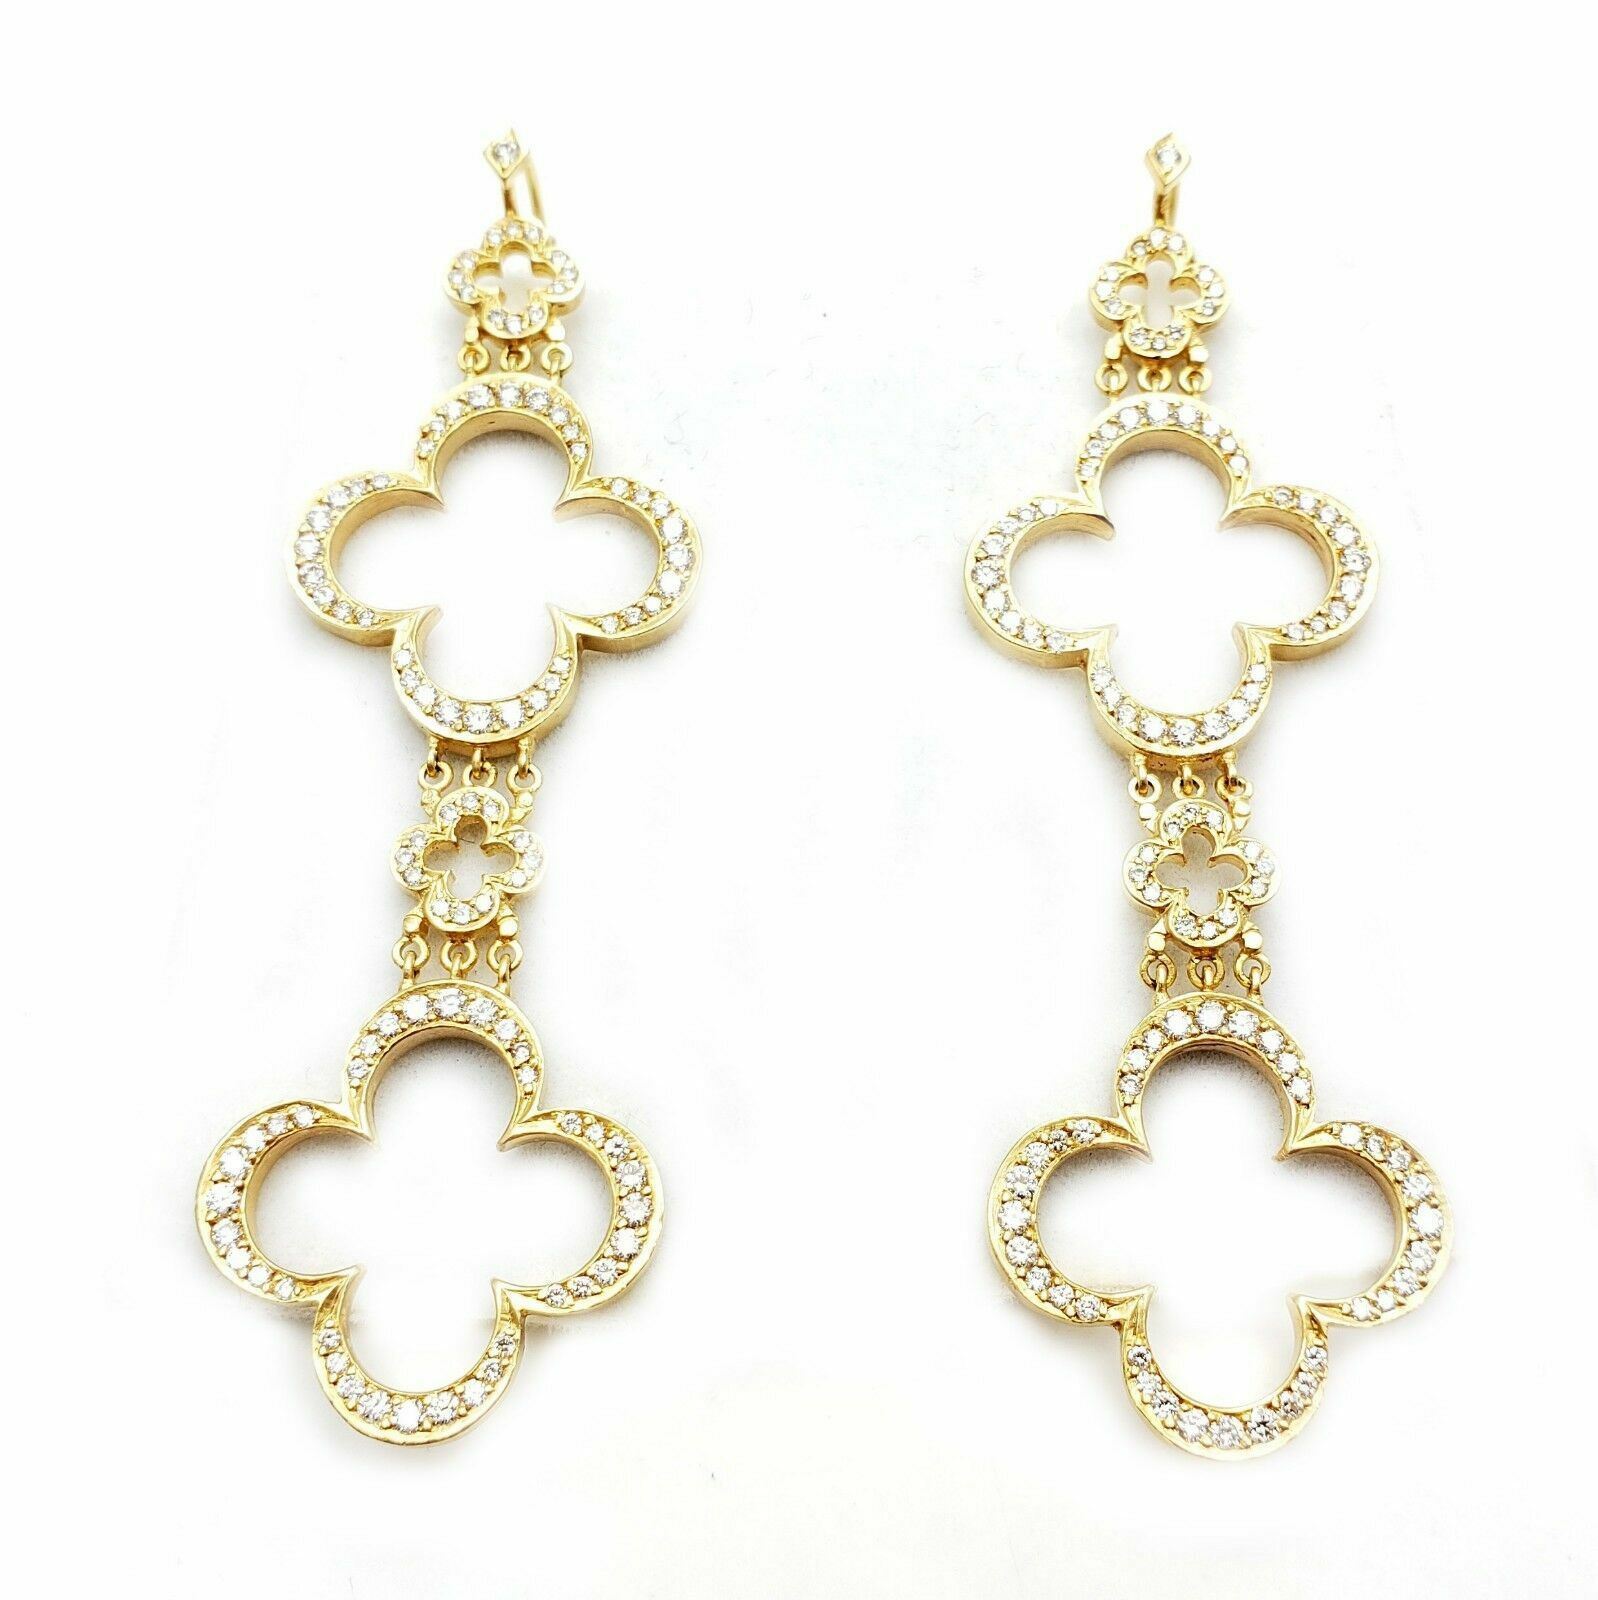 Loree Rodkin Jewelry & Watches:Vintage & Antique Jewelry:Earrings Ultra Rare Large Loree Rodkin 18k Yellow Gold 3ctw Diamond Cross Earrings